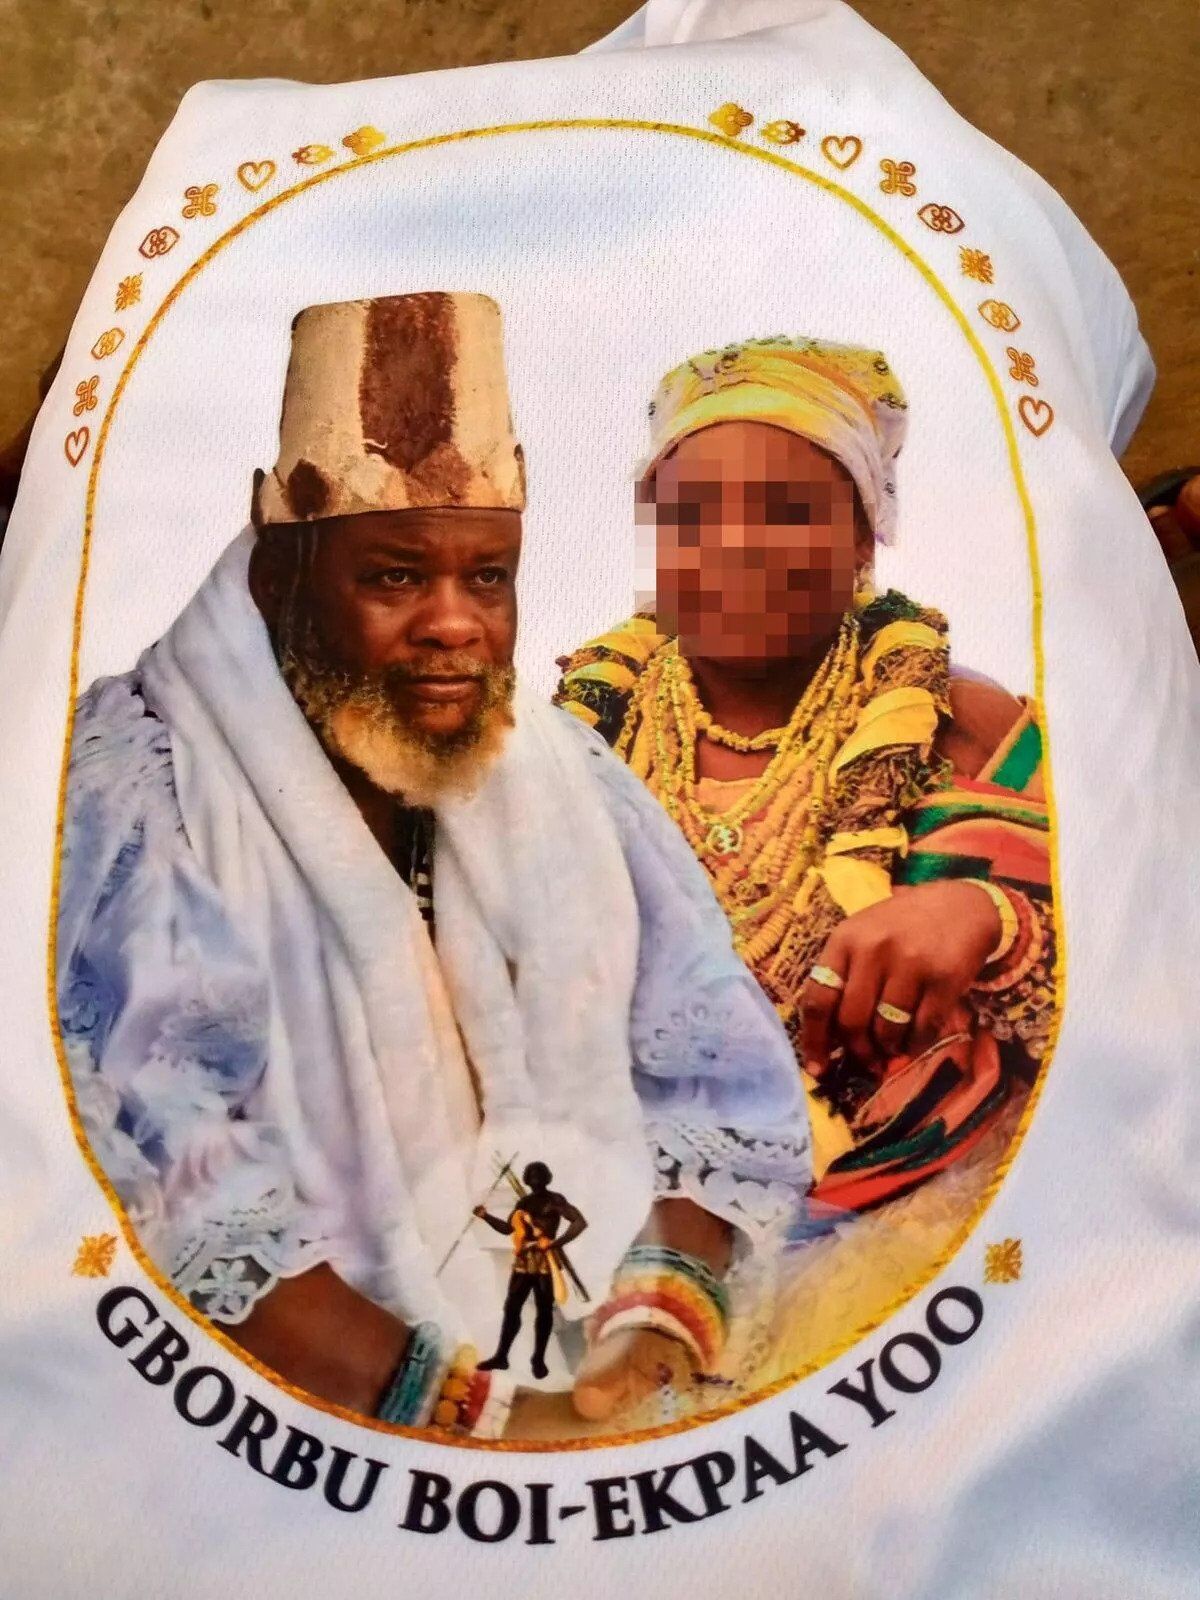 У Гані 63-річний священник одружився з 12-річною дівчиною: чоловік вибрав наречену, коли їй було всього 6. Фото і подробиці